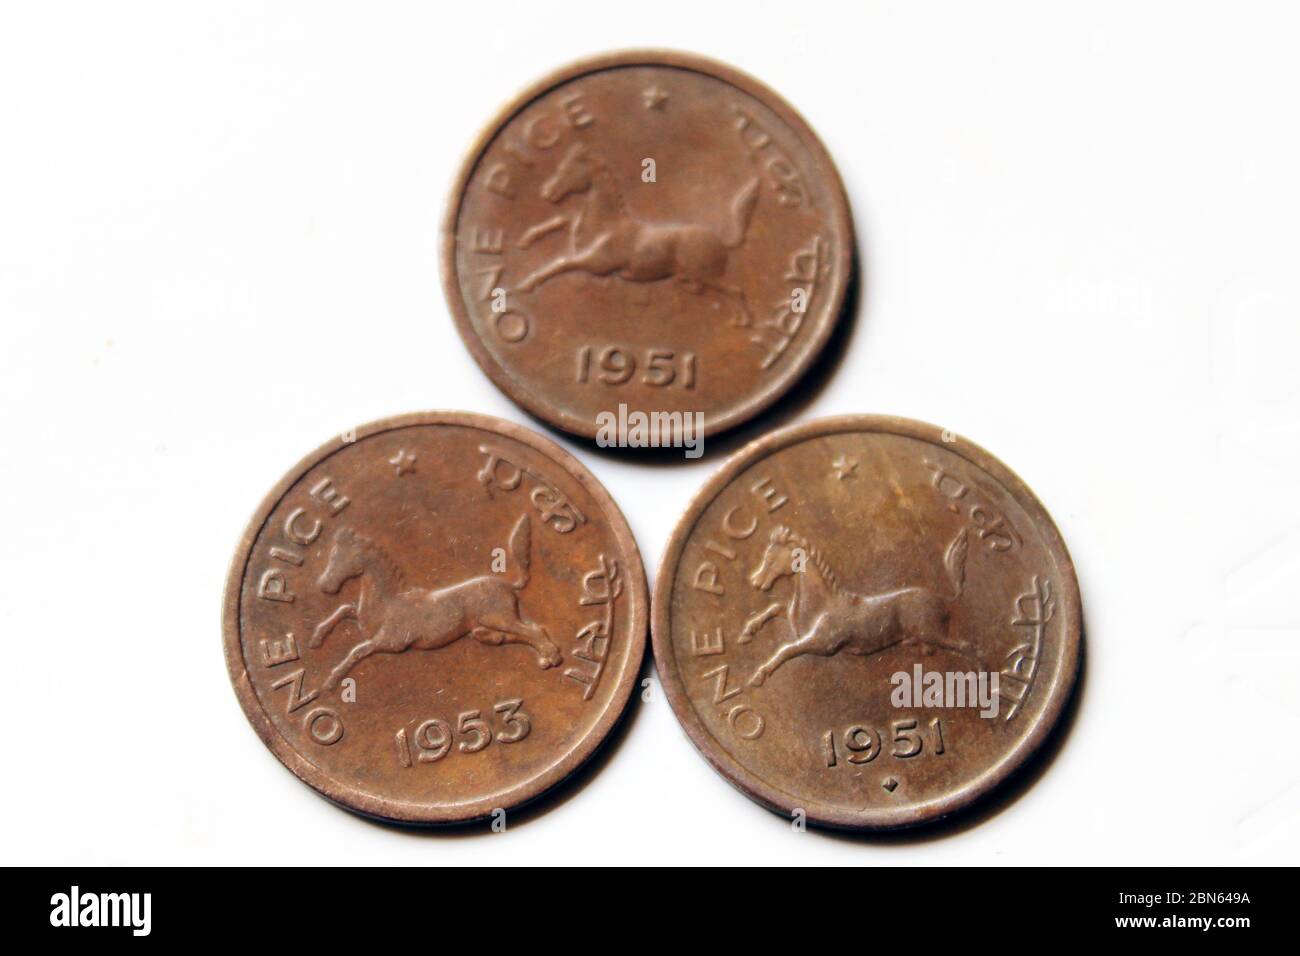 Alte Münzen indischer Jahrgänge. Alte indische ein-Pice Münze von 1951 und 1953 isoliert auf weißem Hintergrund. Stockfoto